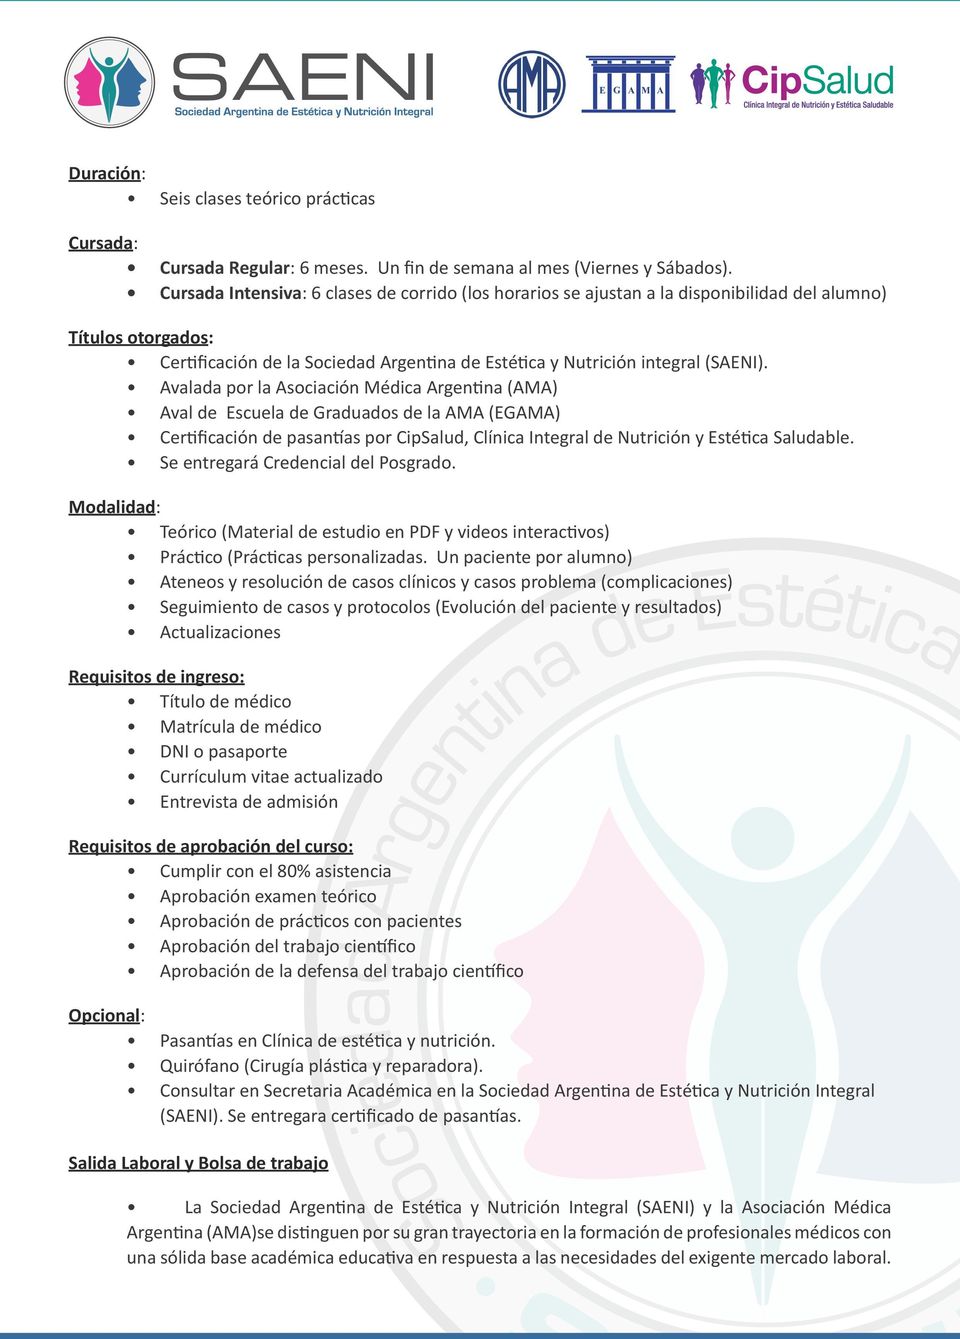 Avalada por la Asociación Médica Argentina (AMA) Aval de Escuela de Graduados de la AMA (EGAMA) Certificación de pasantías por CipSalud, Clínica Integral de Nutrición y Estética Saludable.